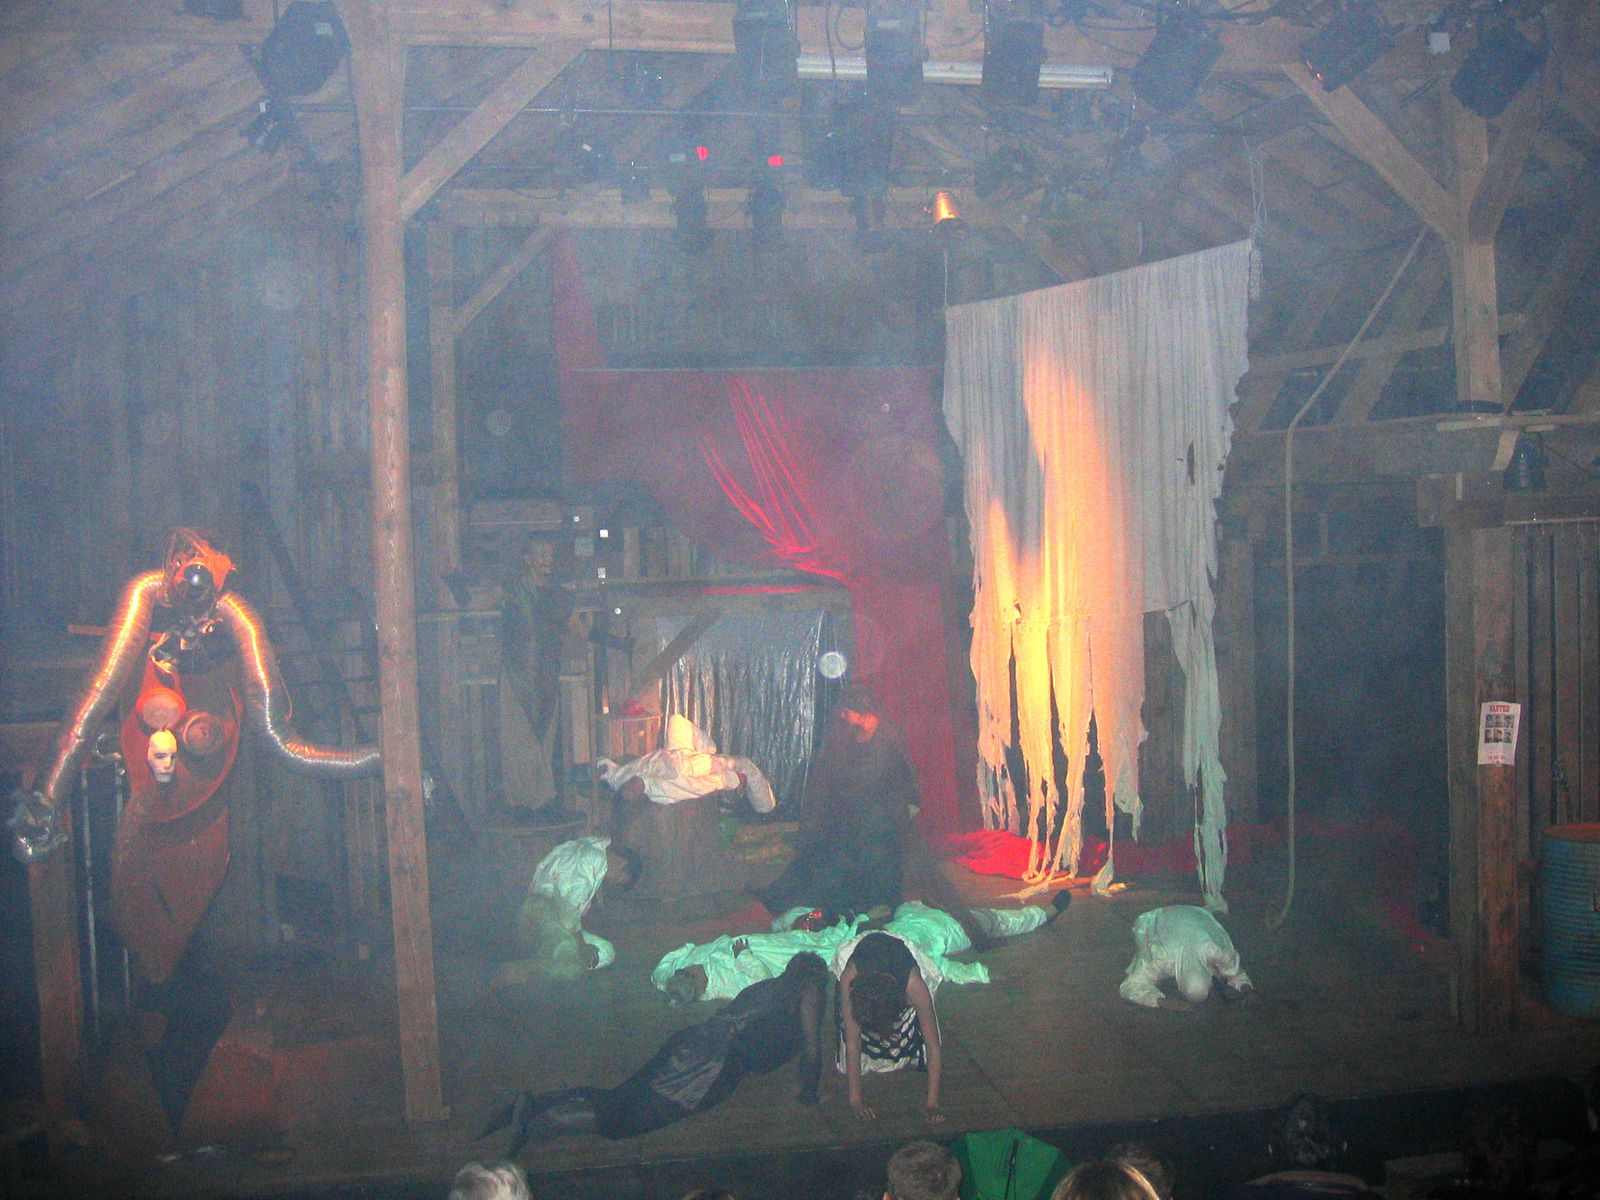 Reprise et adaptation à la Grange Burcklé de Masevaux du spectacle joué en août 2004 au château de Ferrette.